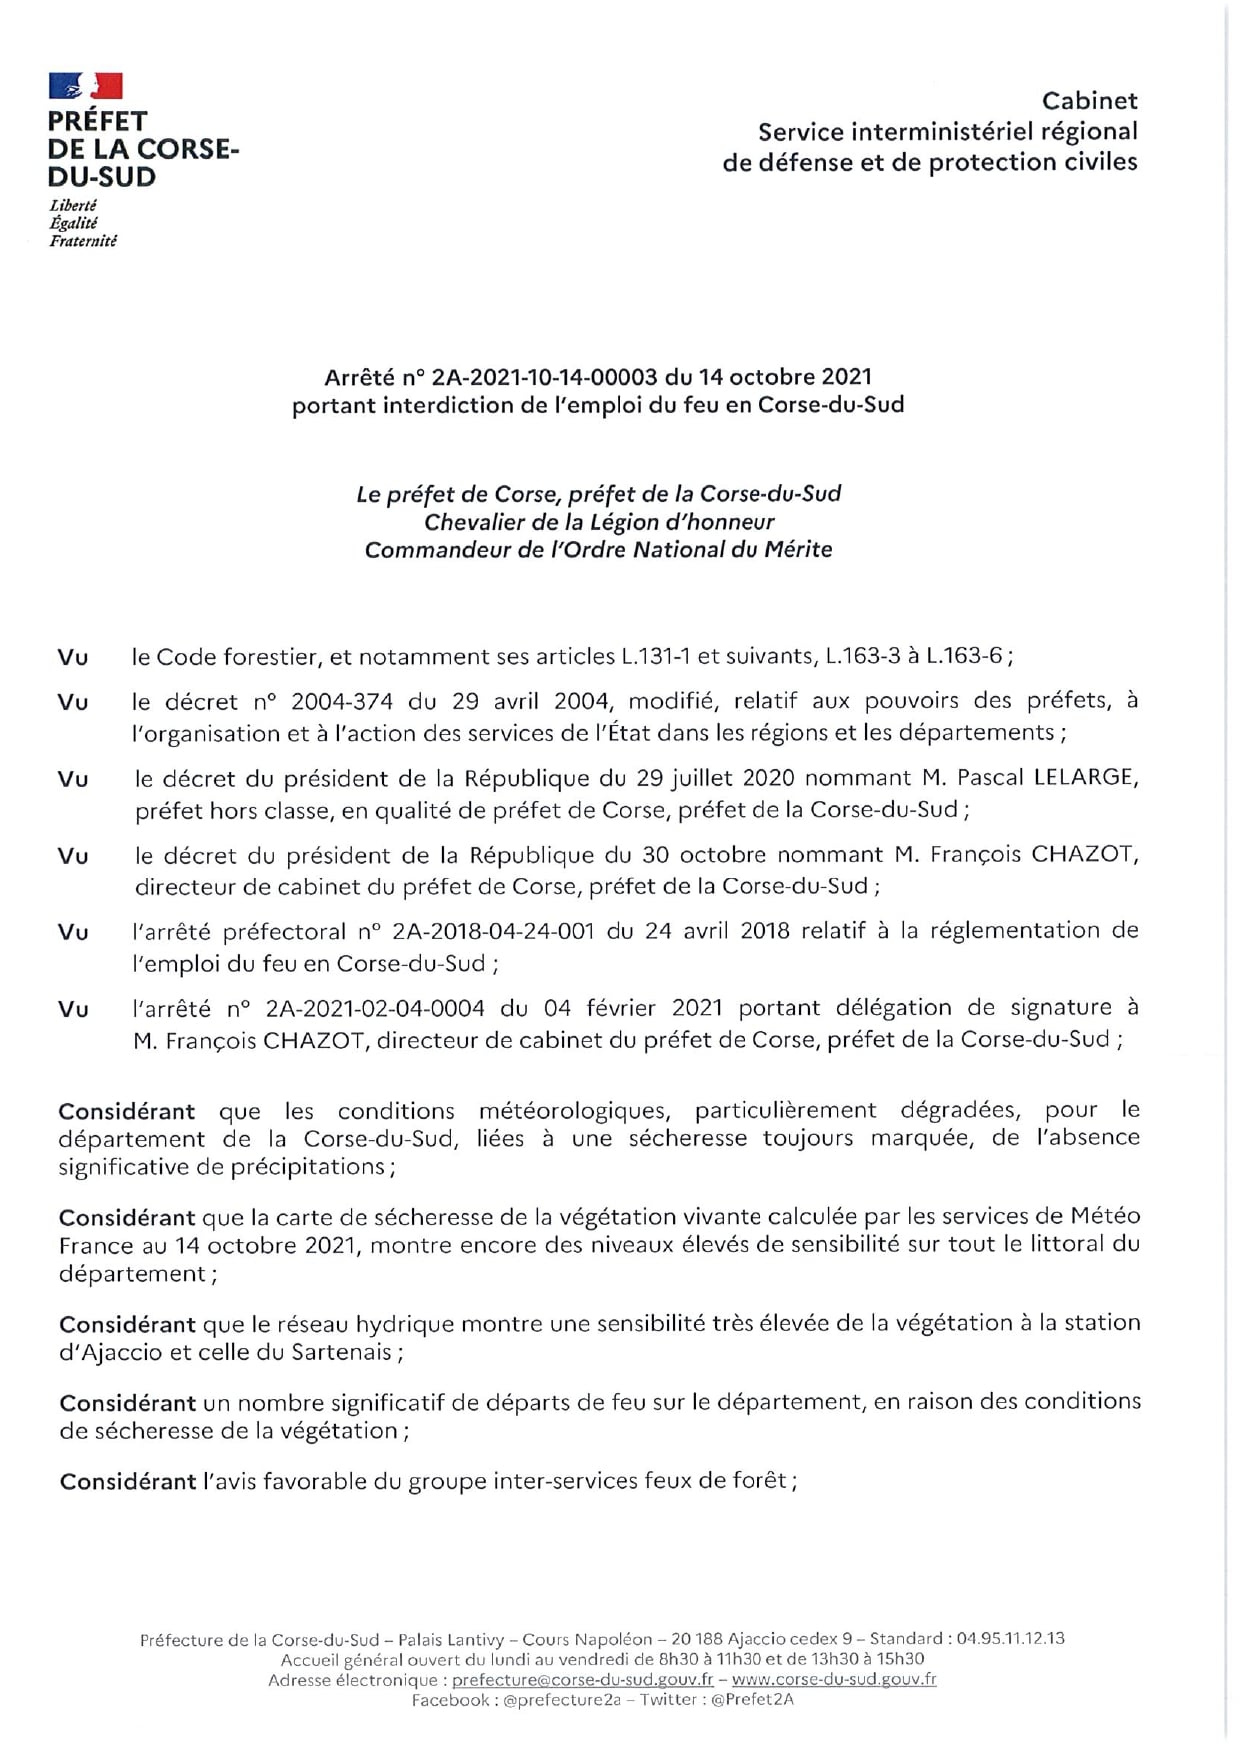 Interdiction d'usage du feu en Corse du Sud jusqu'au Lundi 8 Novembre inclus 